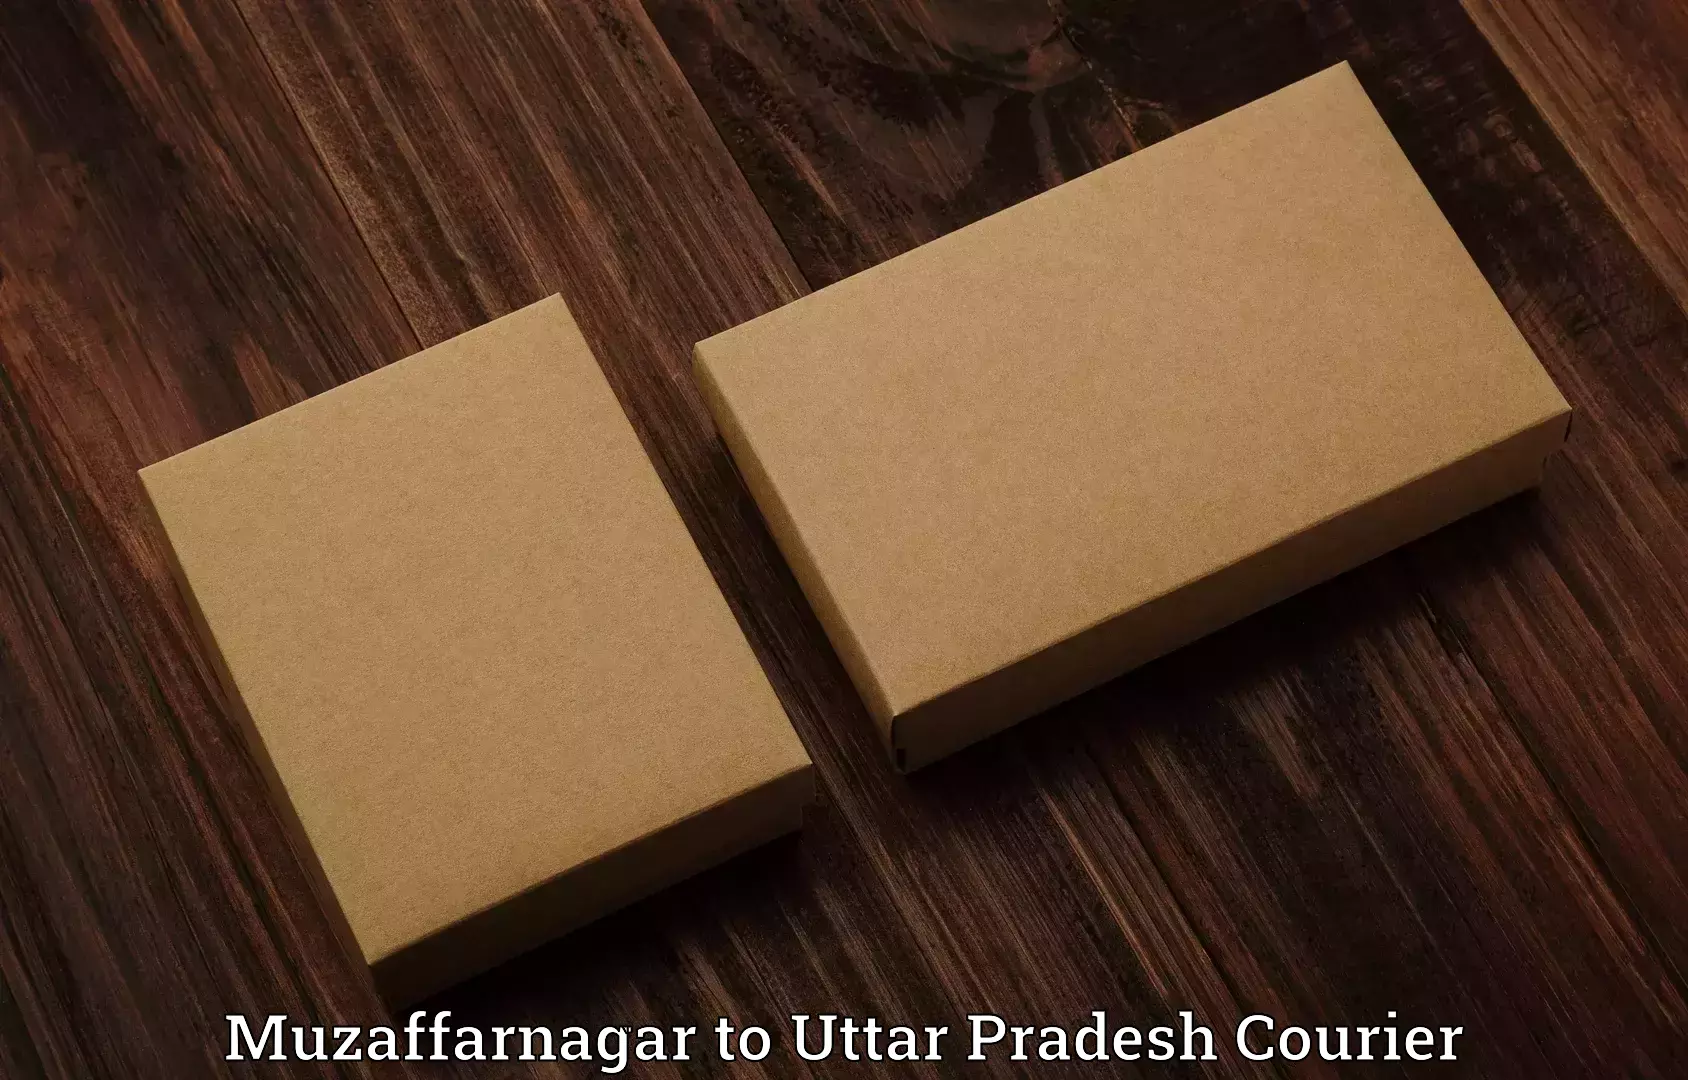 Luggage shipment specialists Muzaffarnagar to NIT Allahabad